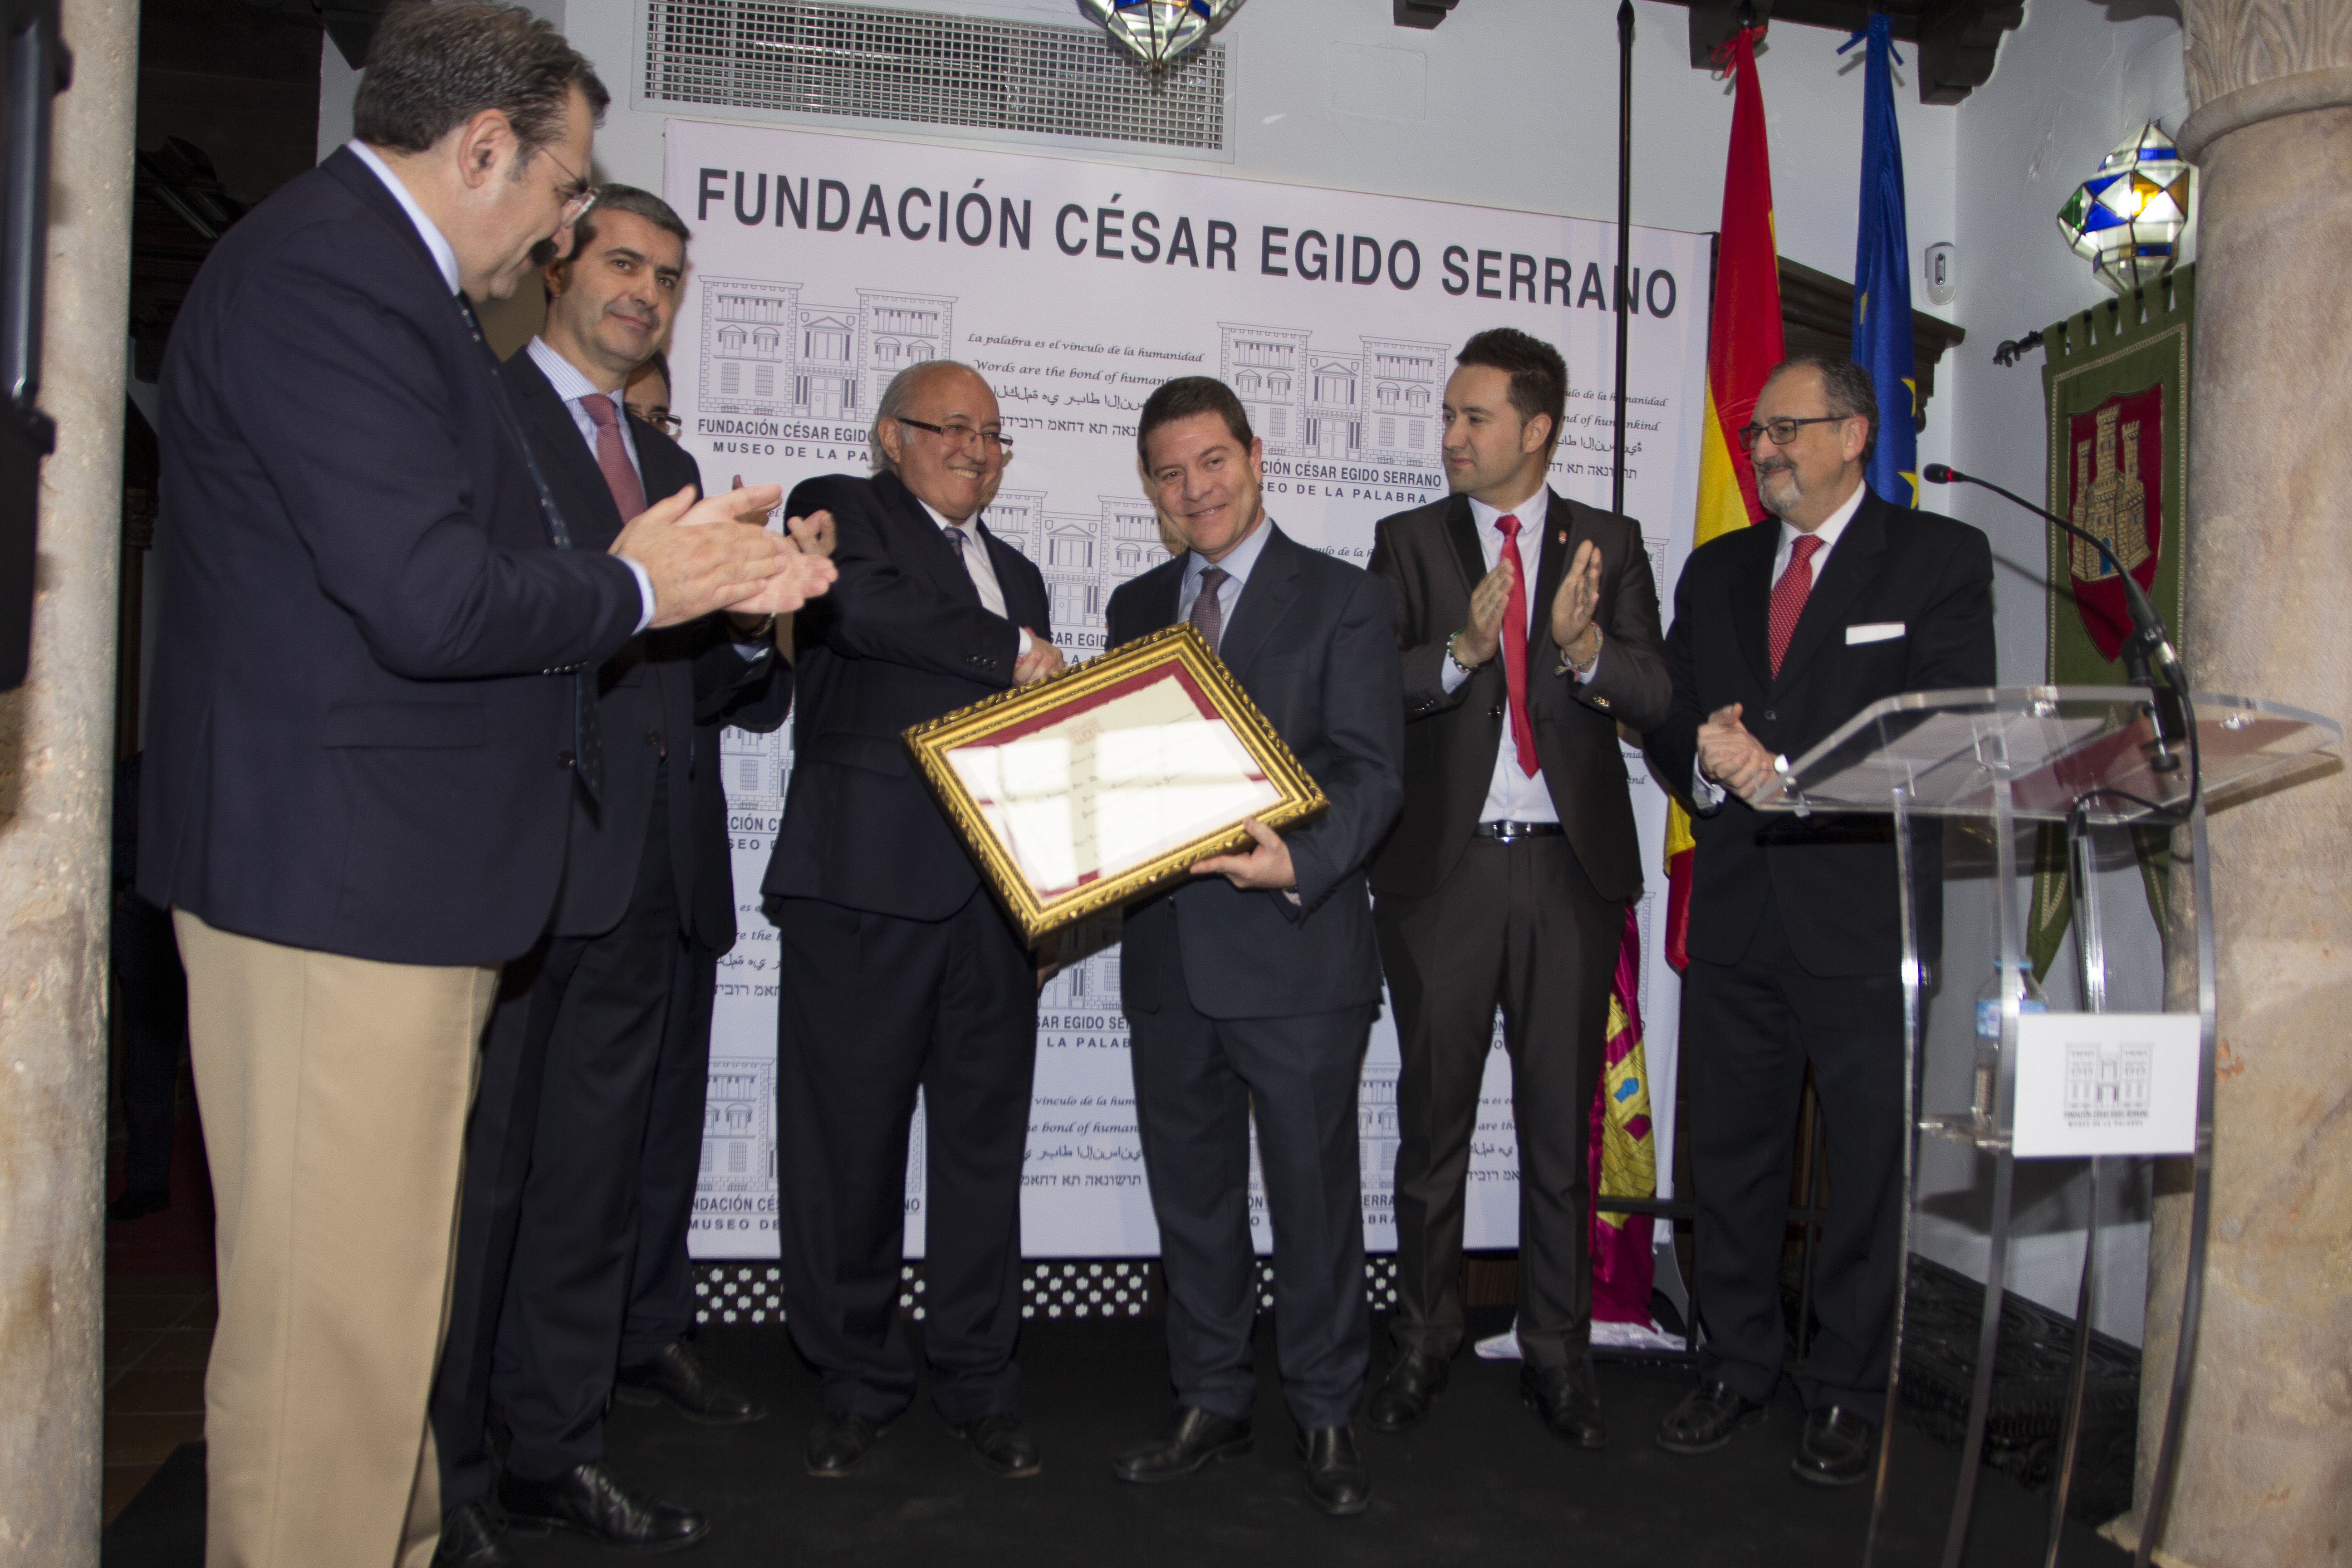 Emotivo momento de apretón de manos entre el Presidente de la Fundación, D. César Egido y D. Emiliano García-Page, Presidente de Honor de la Fundación César Egido Serrano.